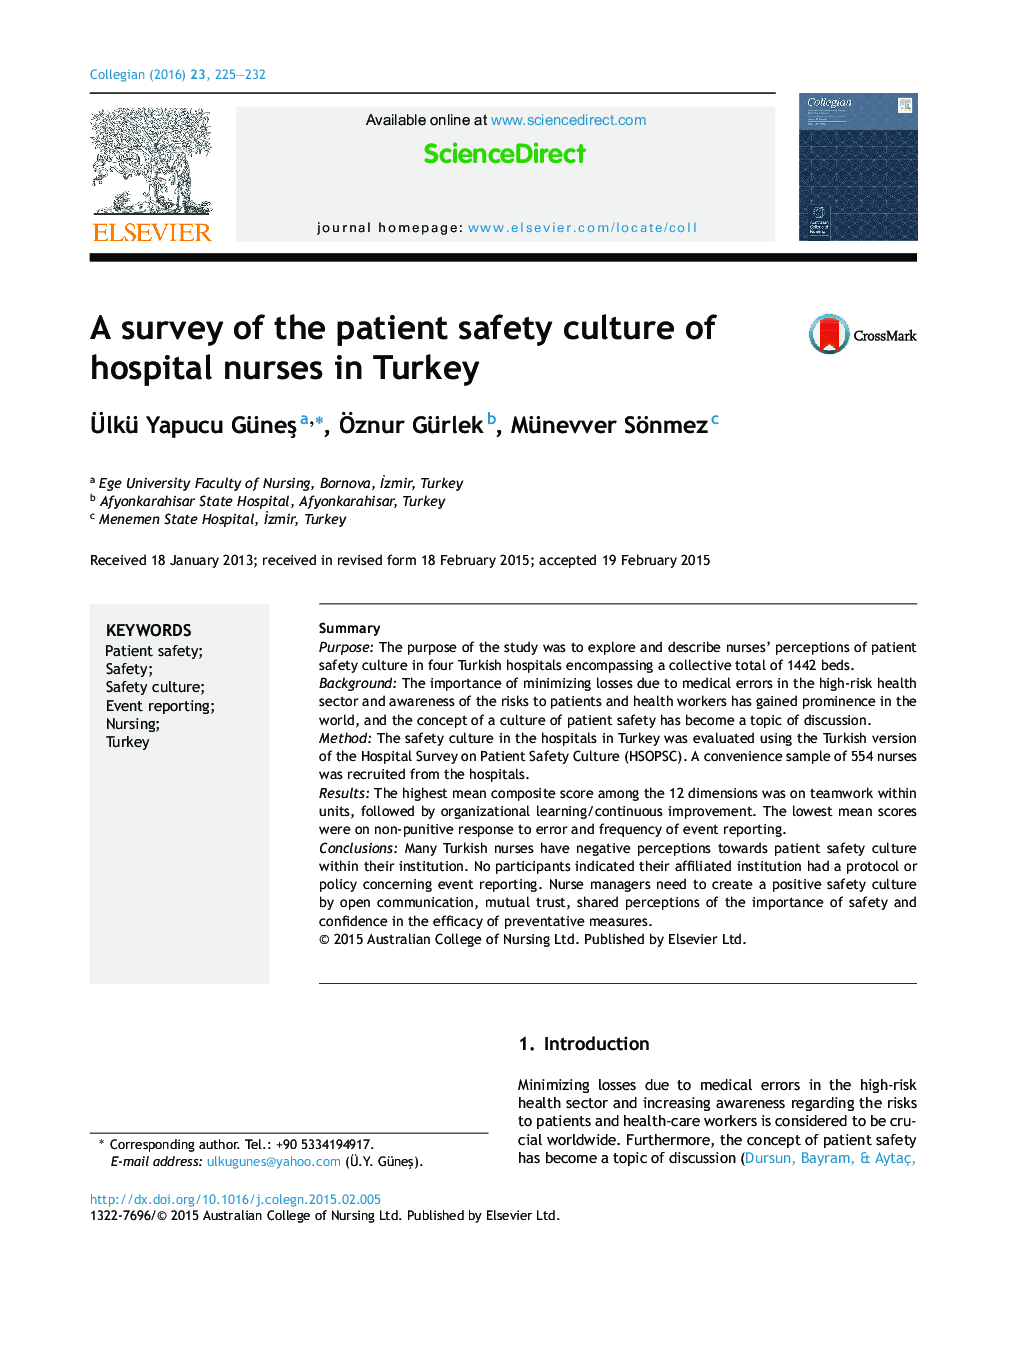 بررسی فرهنگ ایمنی بیمار پرستاران بیمارستان در ترکیه